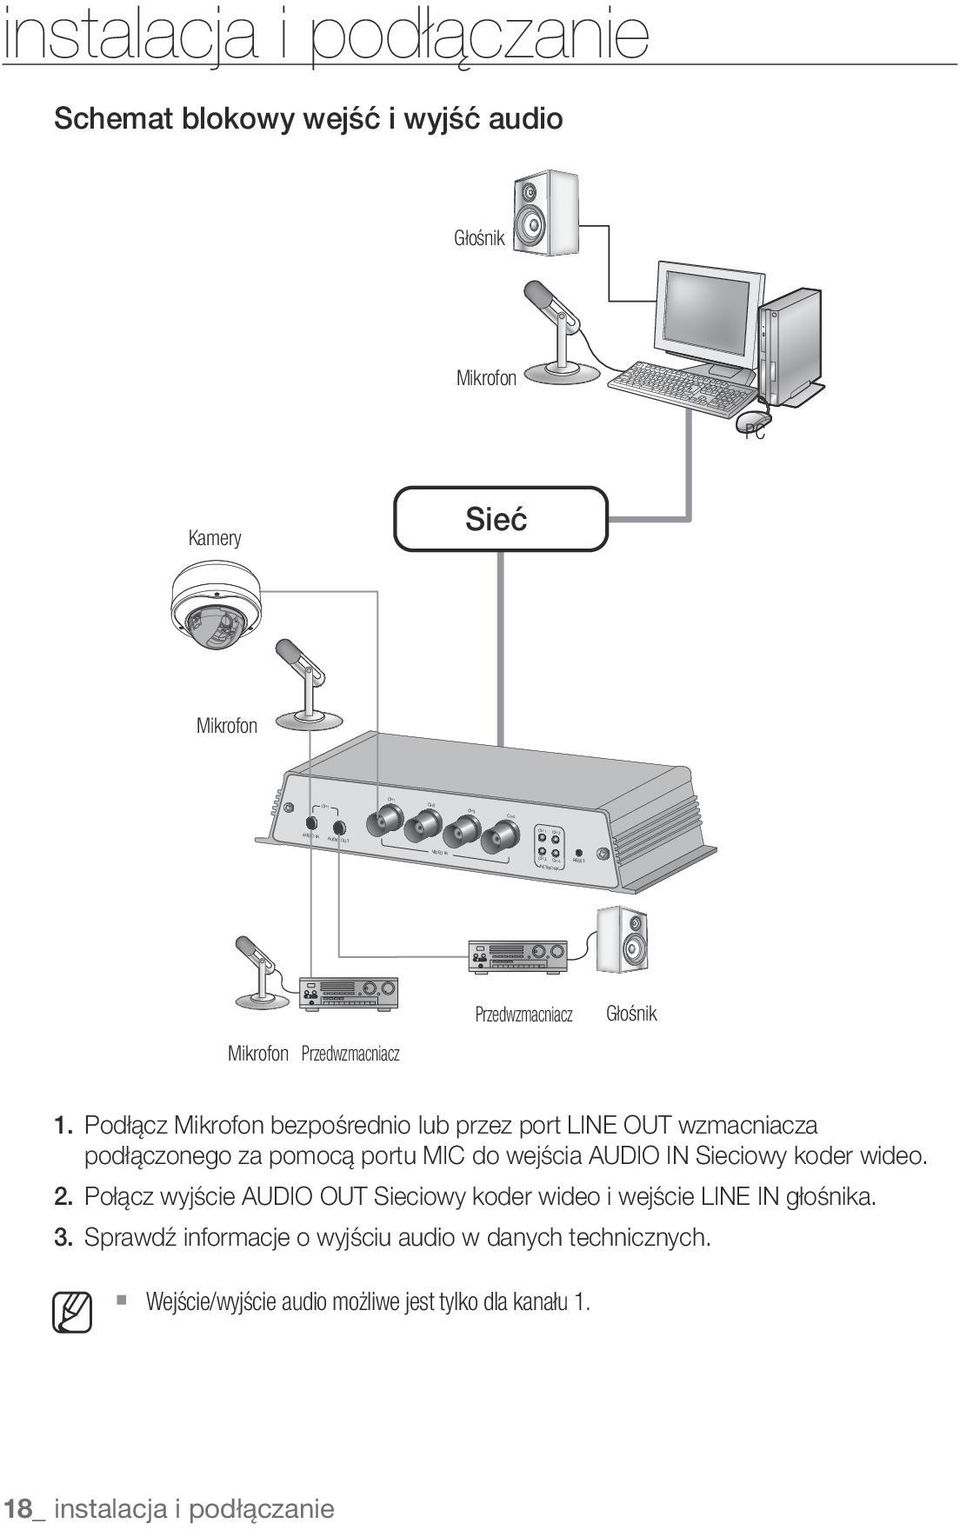 Podłącz Mikrofon bezpośrednio lub przez port LINE OUT wzmacniacza podłączonego za pomocą portu MIC do wejścia AUDIO IN Sieciowy koder wideo. 2.